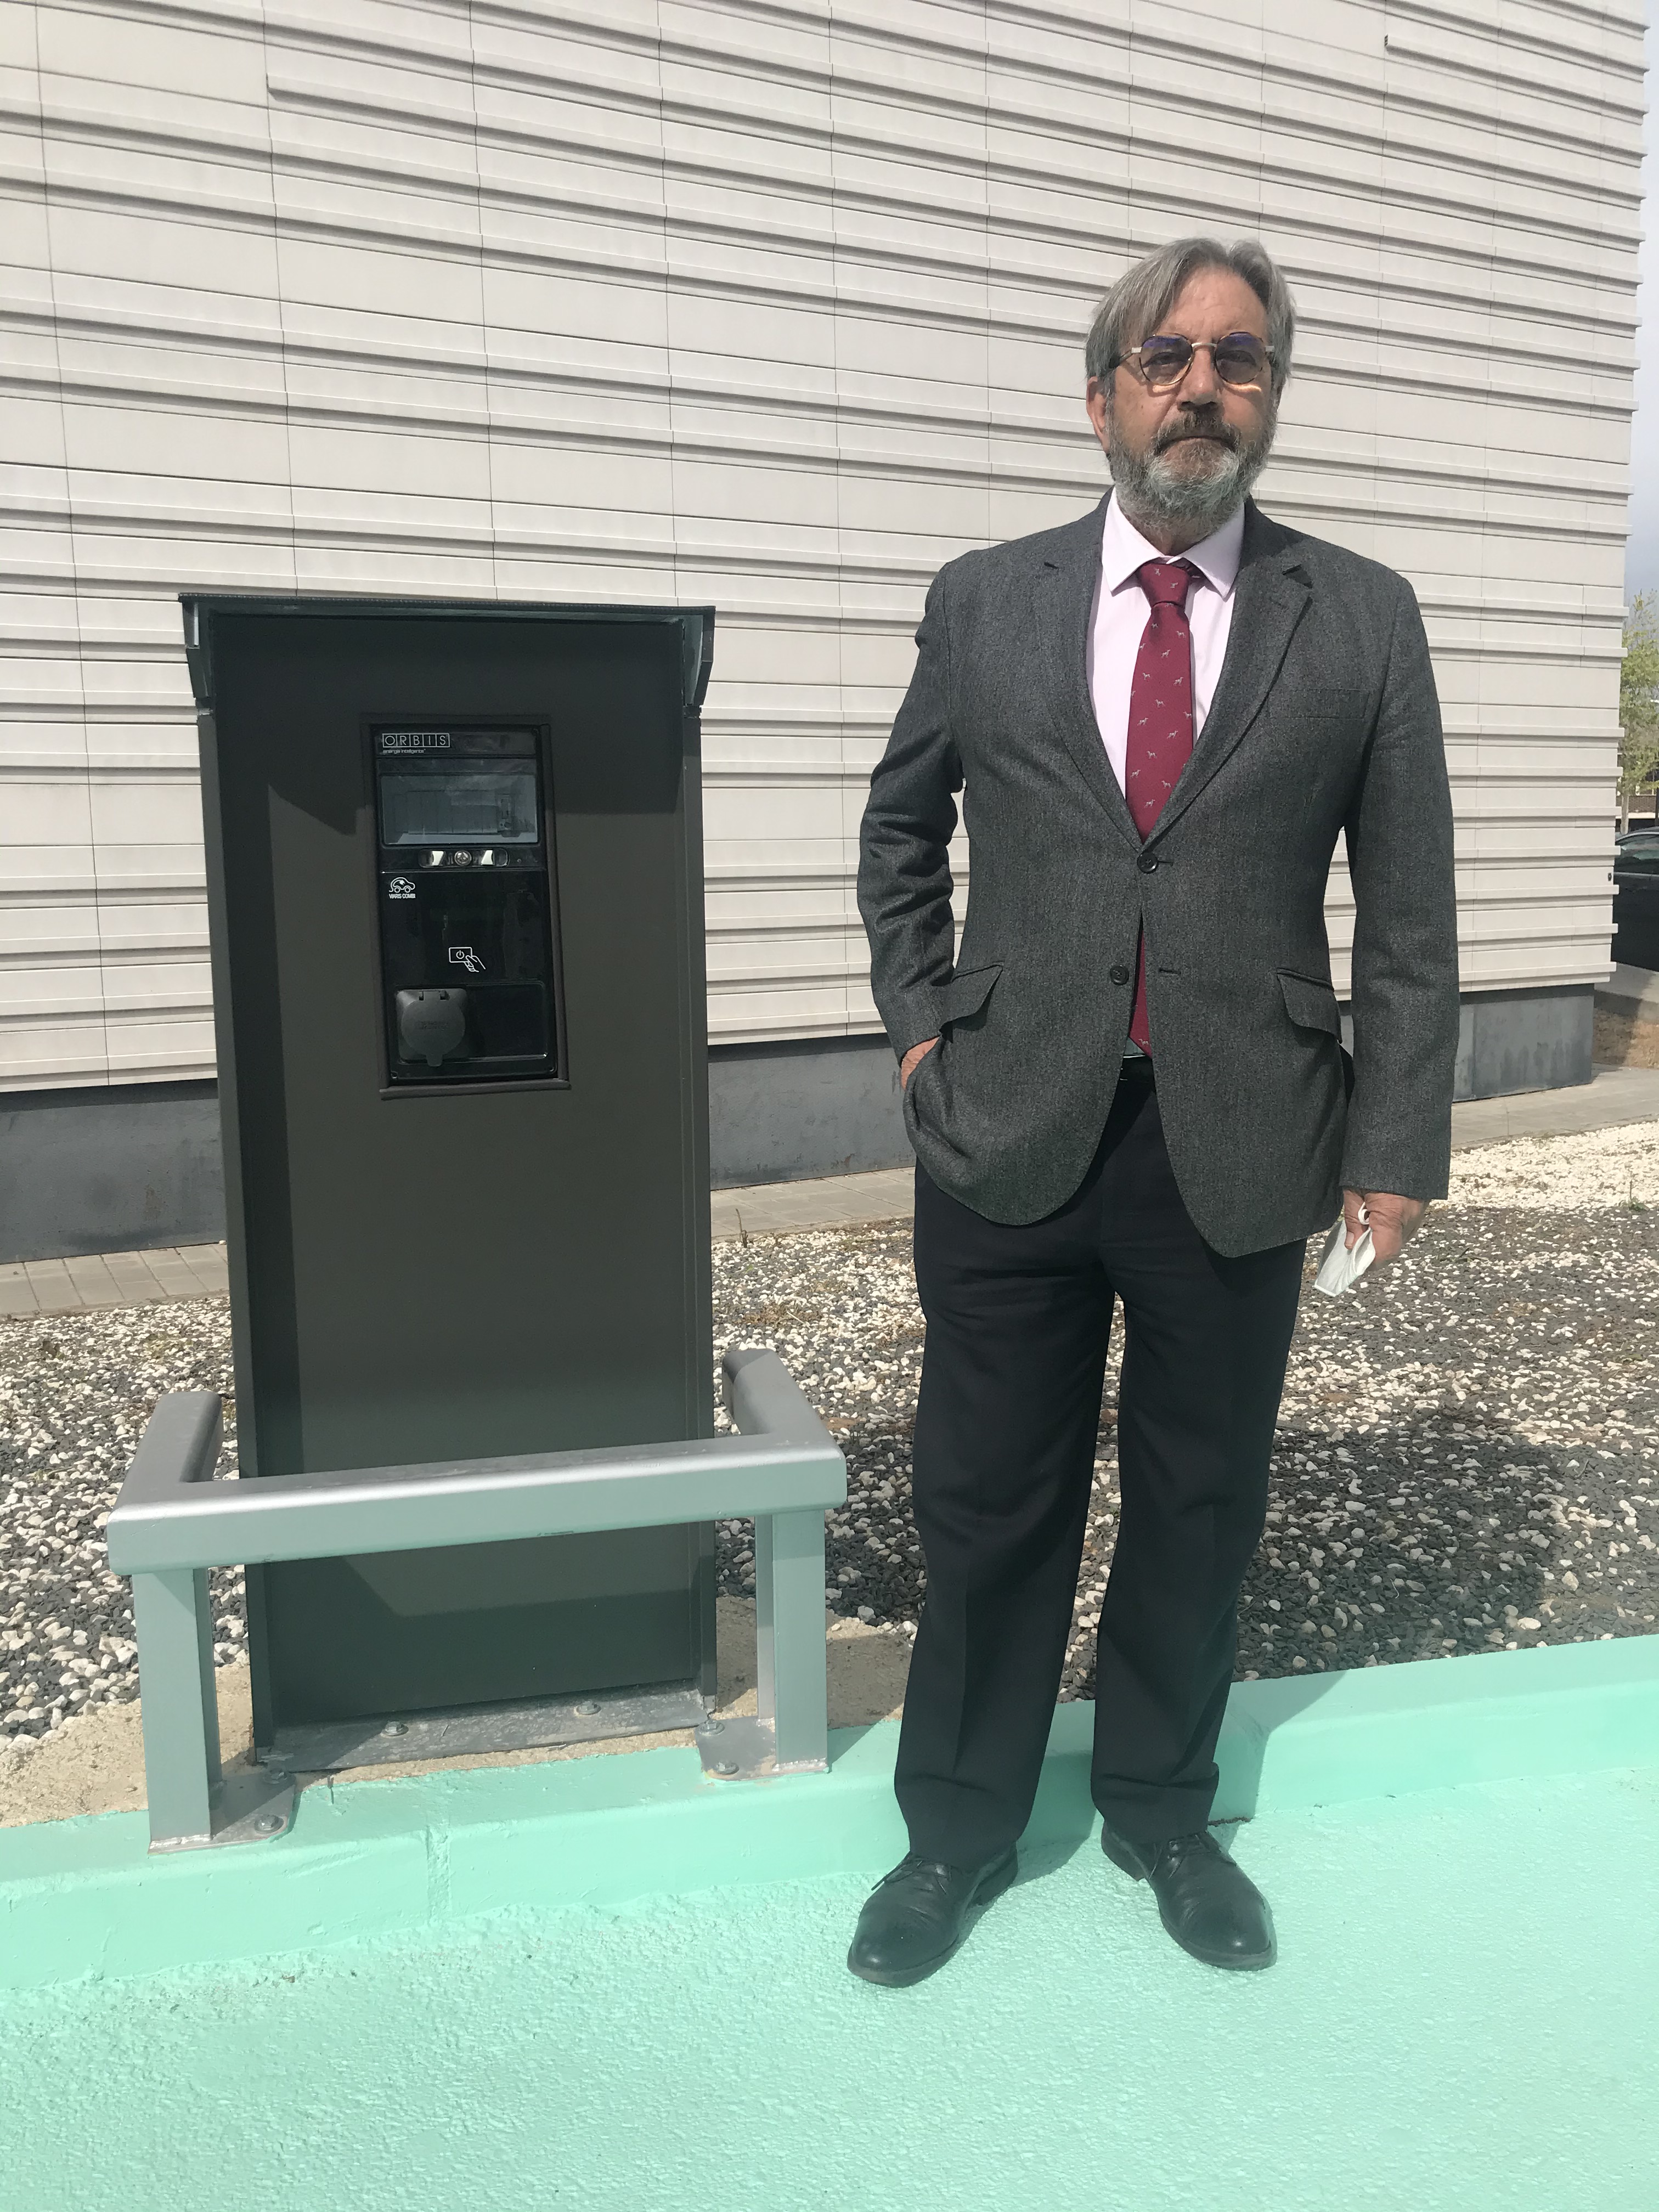 Instalación tres puntos de recarga vehículos electricos Hospital Quirónsalud Ciudad Real